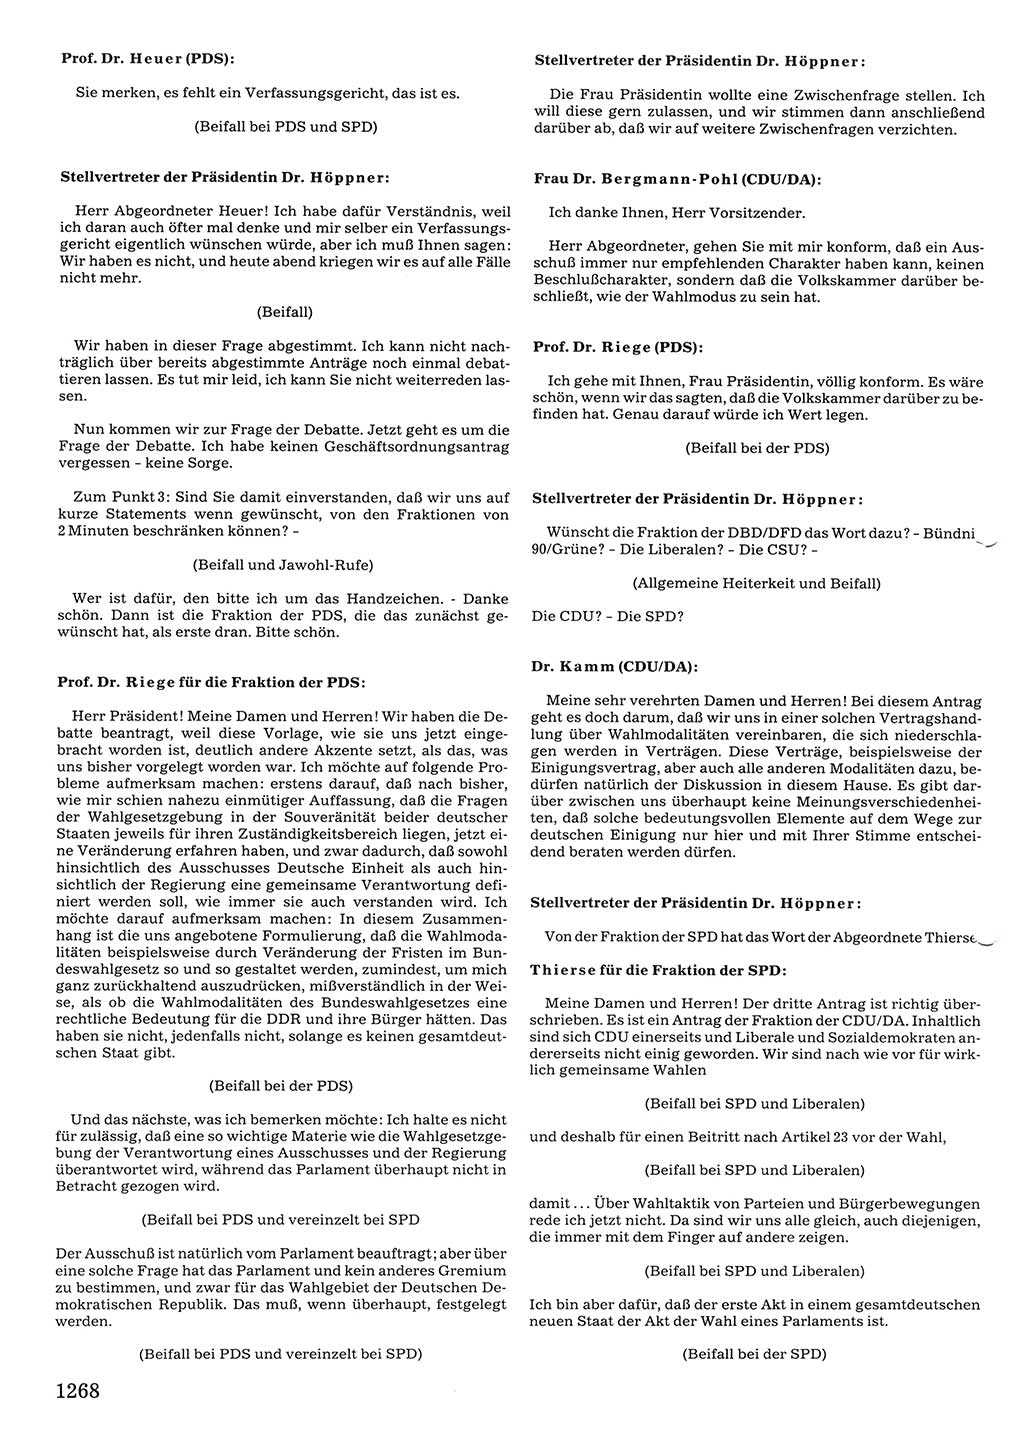 Tagungen der Volkskammer (VK) der Deutschen Demokratischen Republik (DDR), 10. Wahlperiode 1990, Seite 1268 (VK. DDR 10. WP. 1990, Prot. Tg. 1-38, 5.4.-2.10.1990, S. 1268)